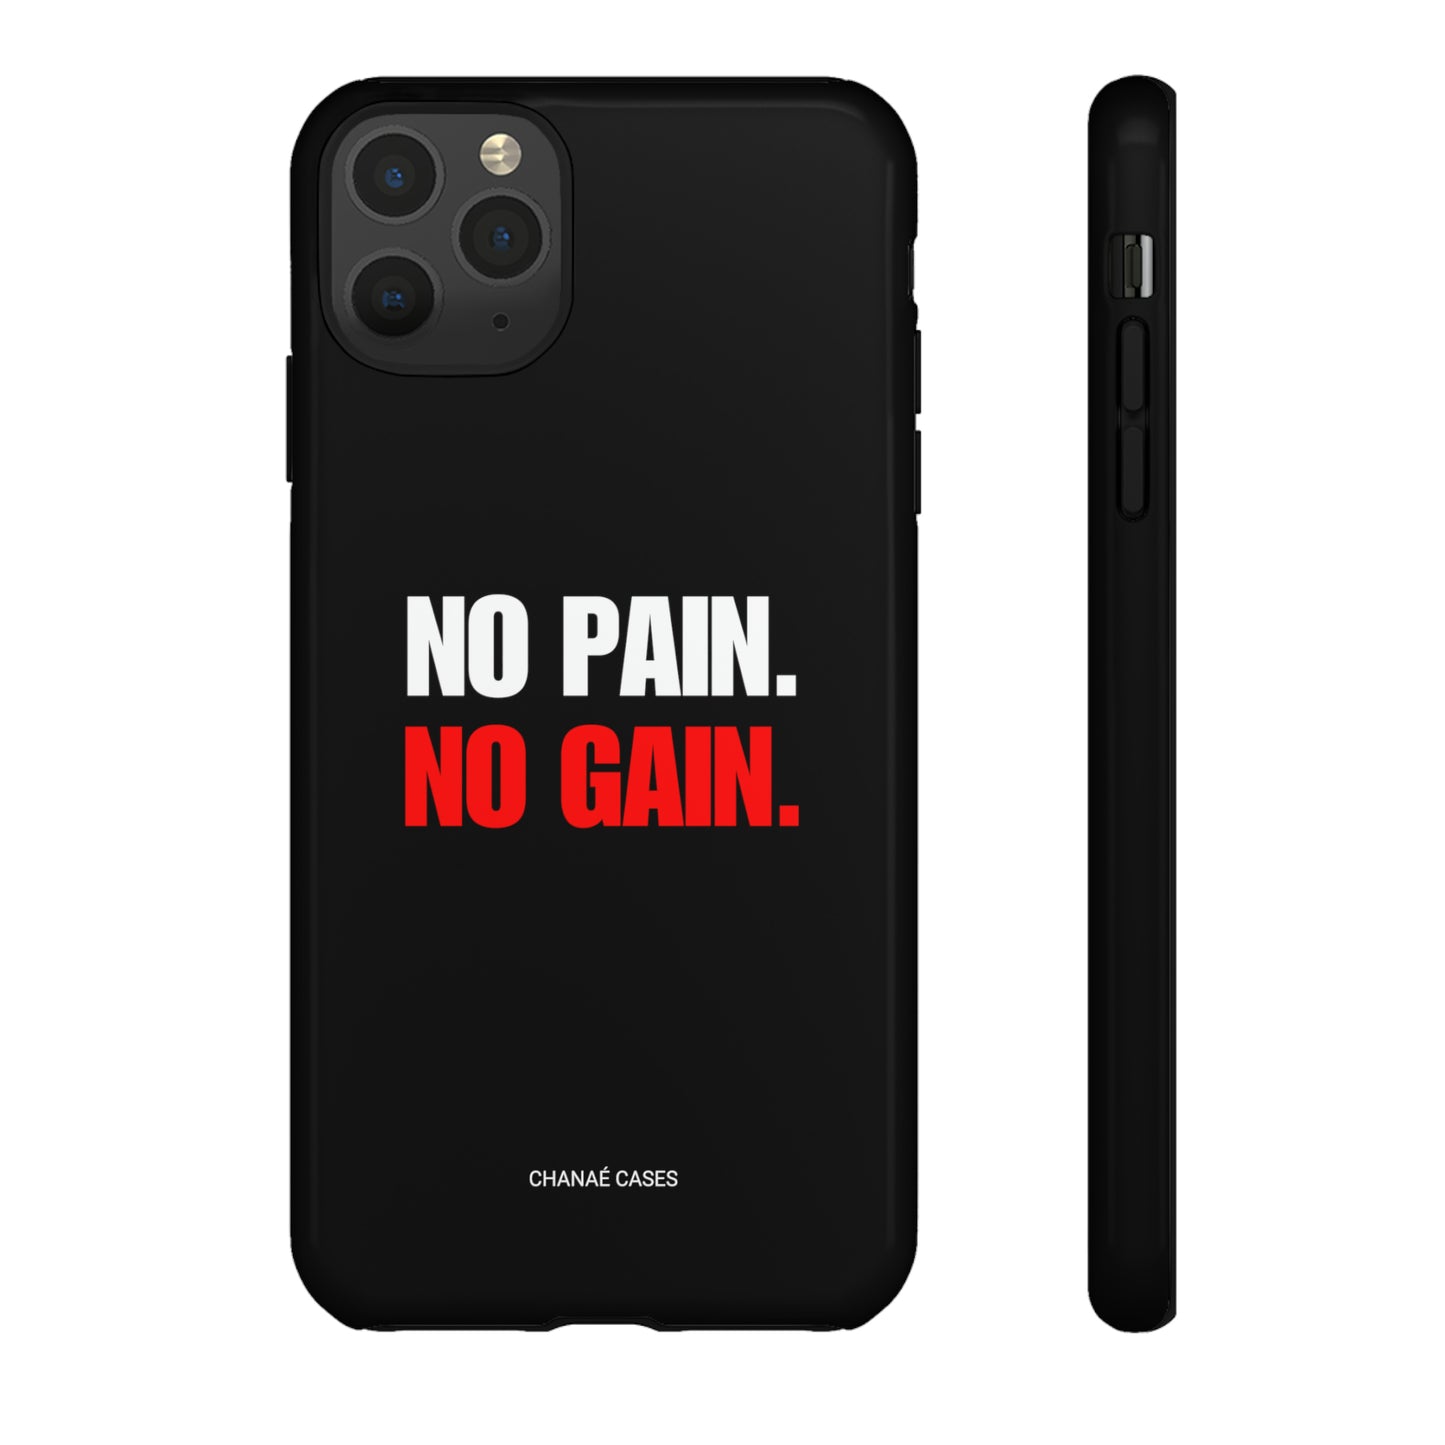 No Pain No Gain iPhone "Tough" Case (Black)